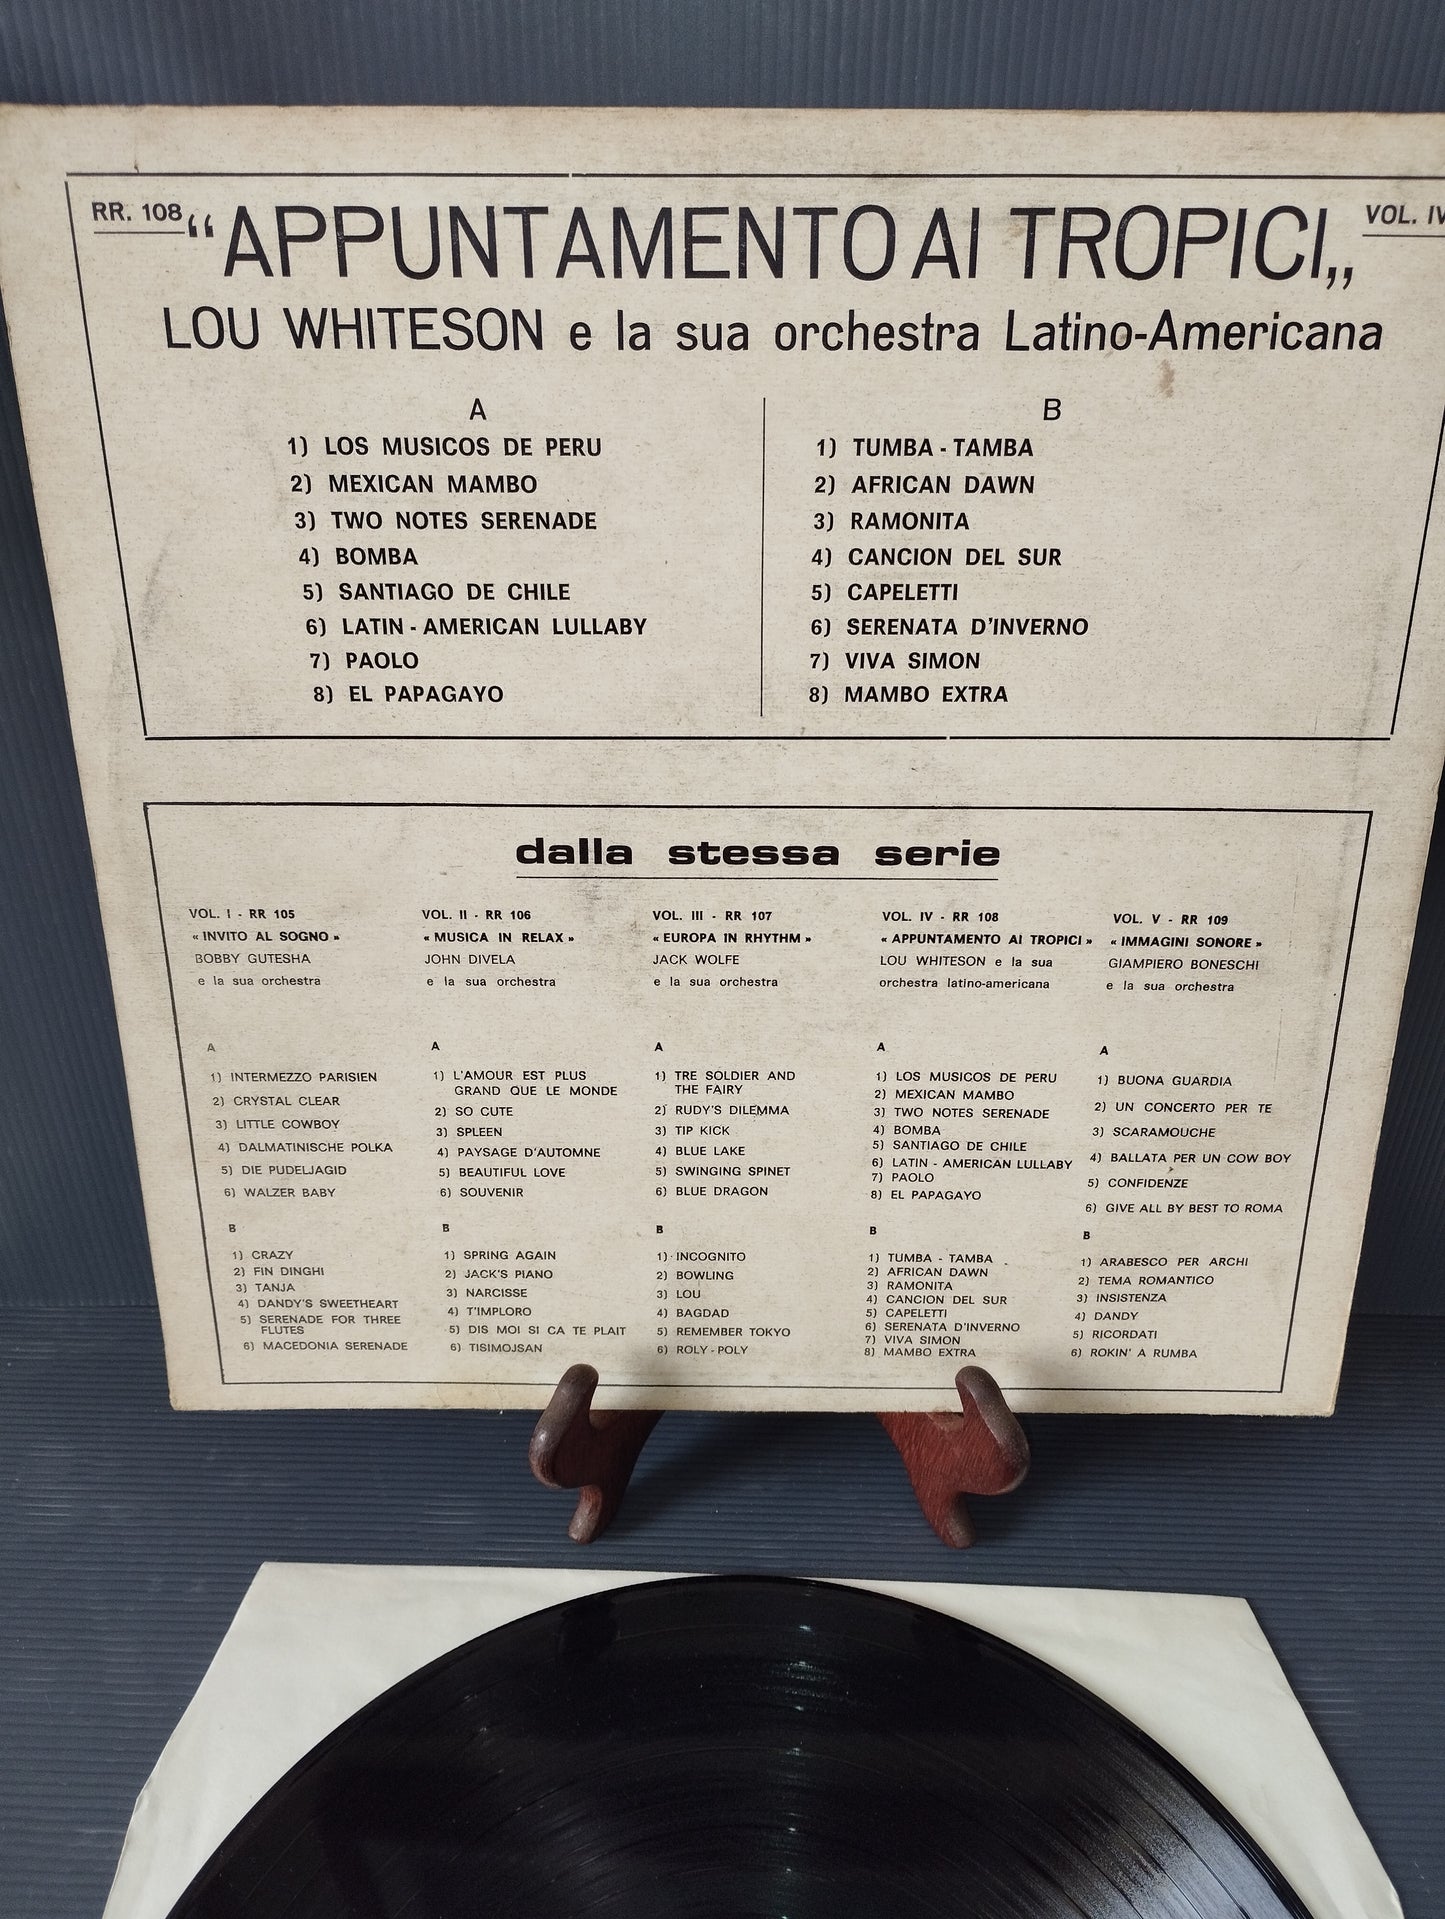 Appuntamento Ai Tropici Vol.IV" Lou Whiteson Lp 33 giri

Edito nel 1966 da  Radio Records